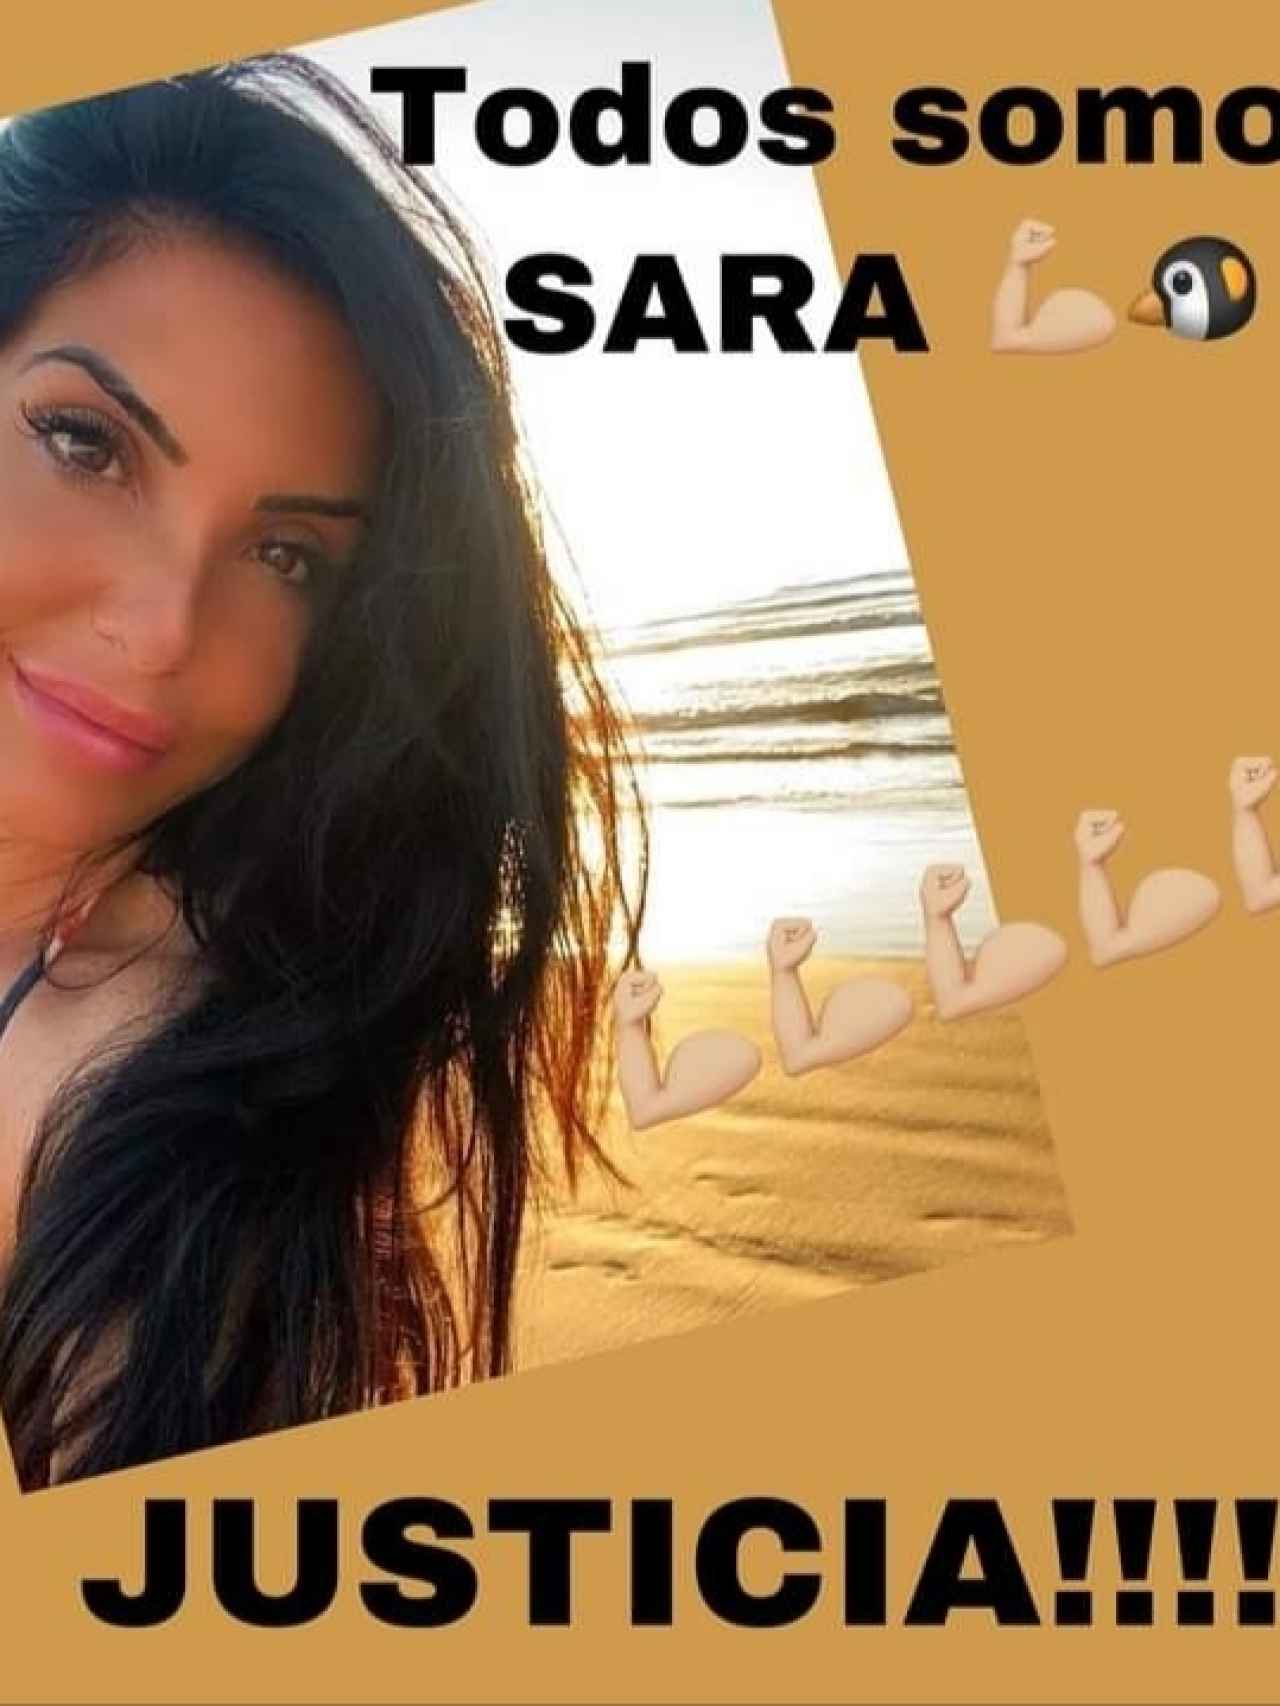 Una de las imágenes que circula en redes sociales para pedir Justicia para Sara.